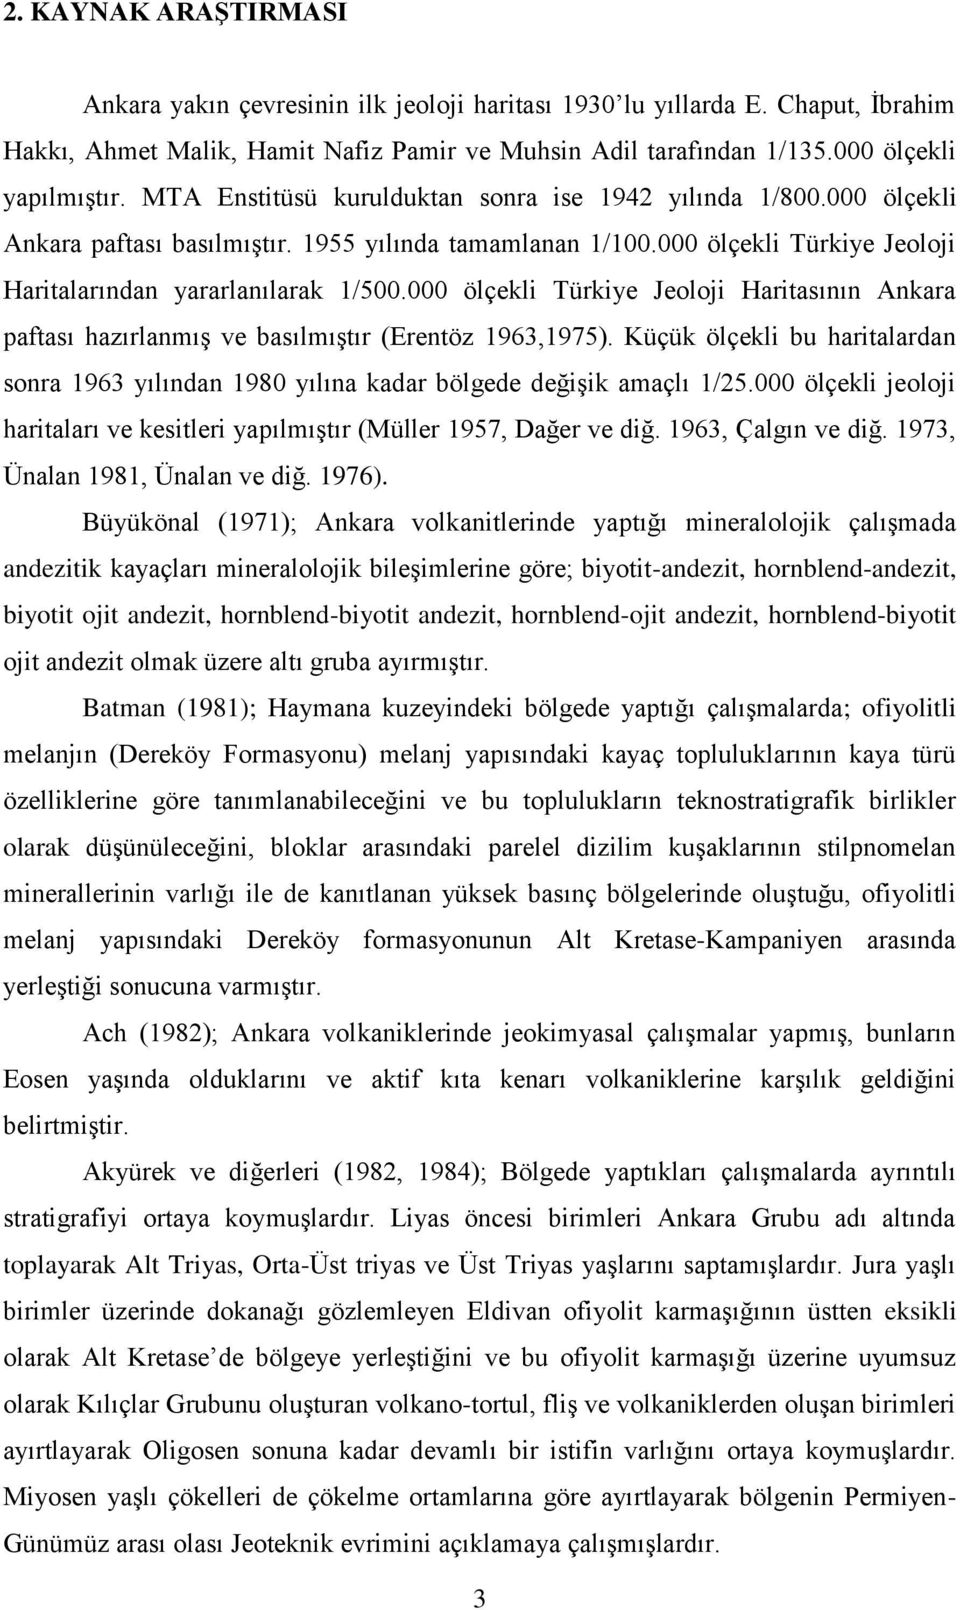 000 ölçekli Türkiye Jeoloji Haritasının Ankara paftası hazırlanmış ve basılmıştır (Erentöz 1963,1975). Küçük ölçekli bu haritalardan sonra 1963 yılından 1980 yılına kadar bölgede değişik amaçlı 1/25.